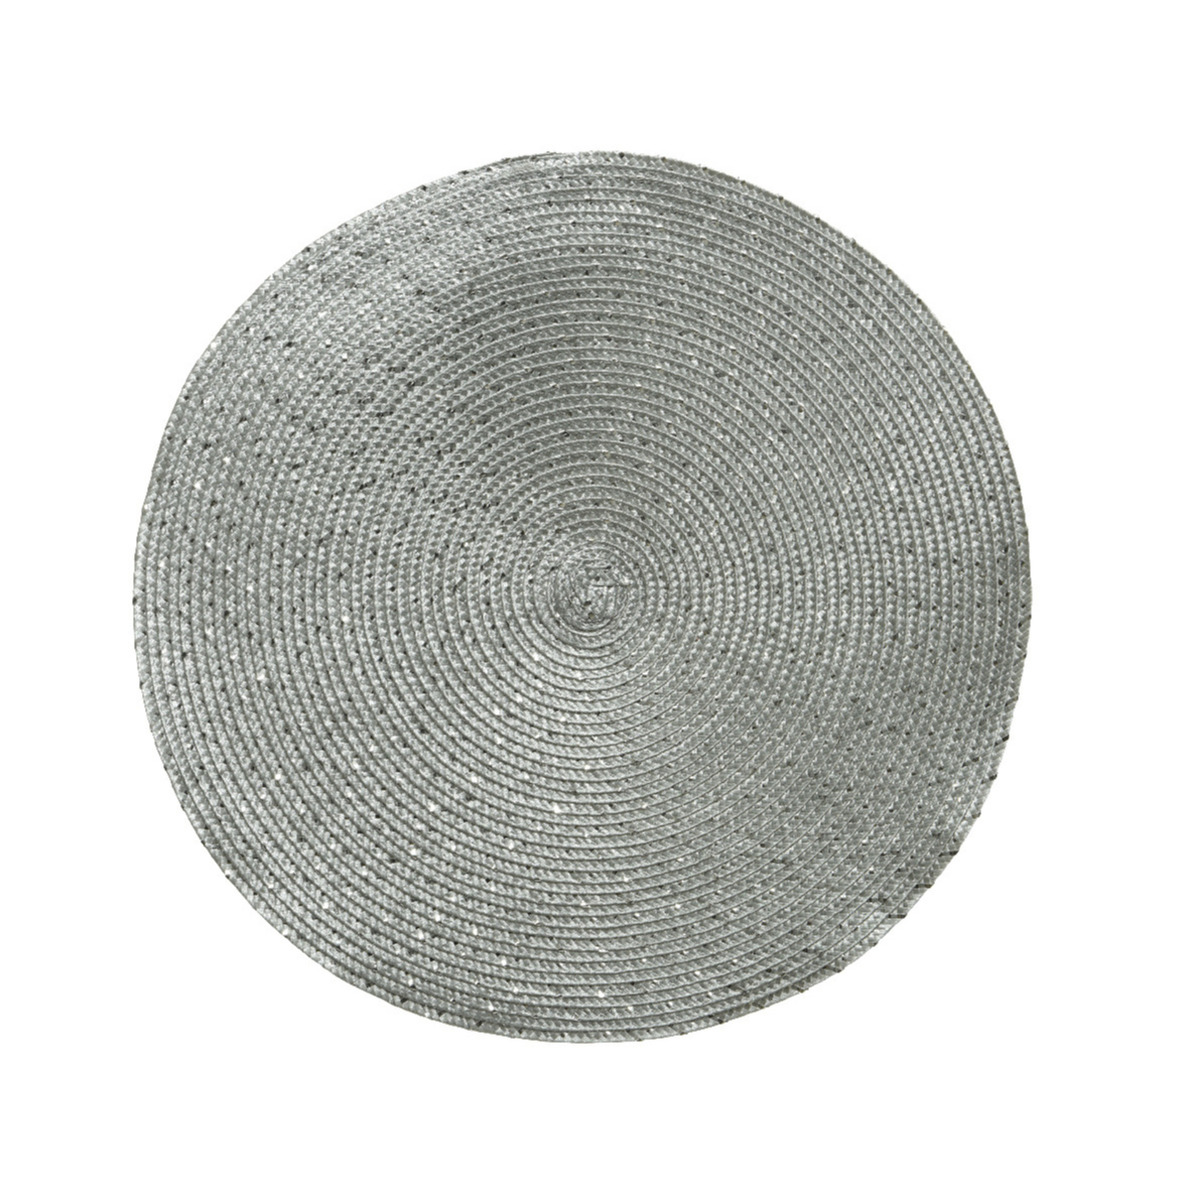 Merkloos 1x stuks ronde placemats zilver cm van kunststof -